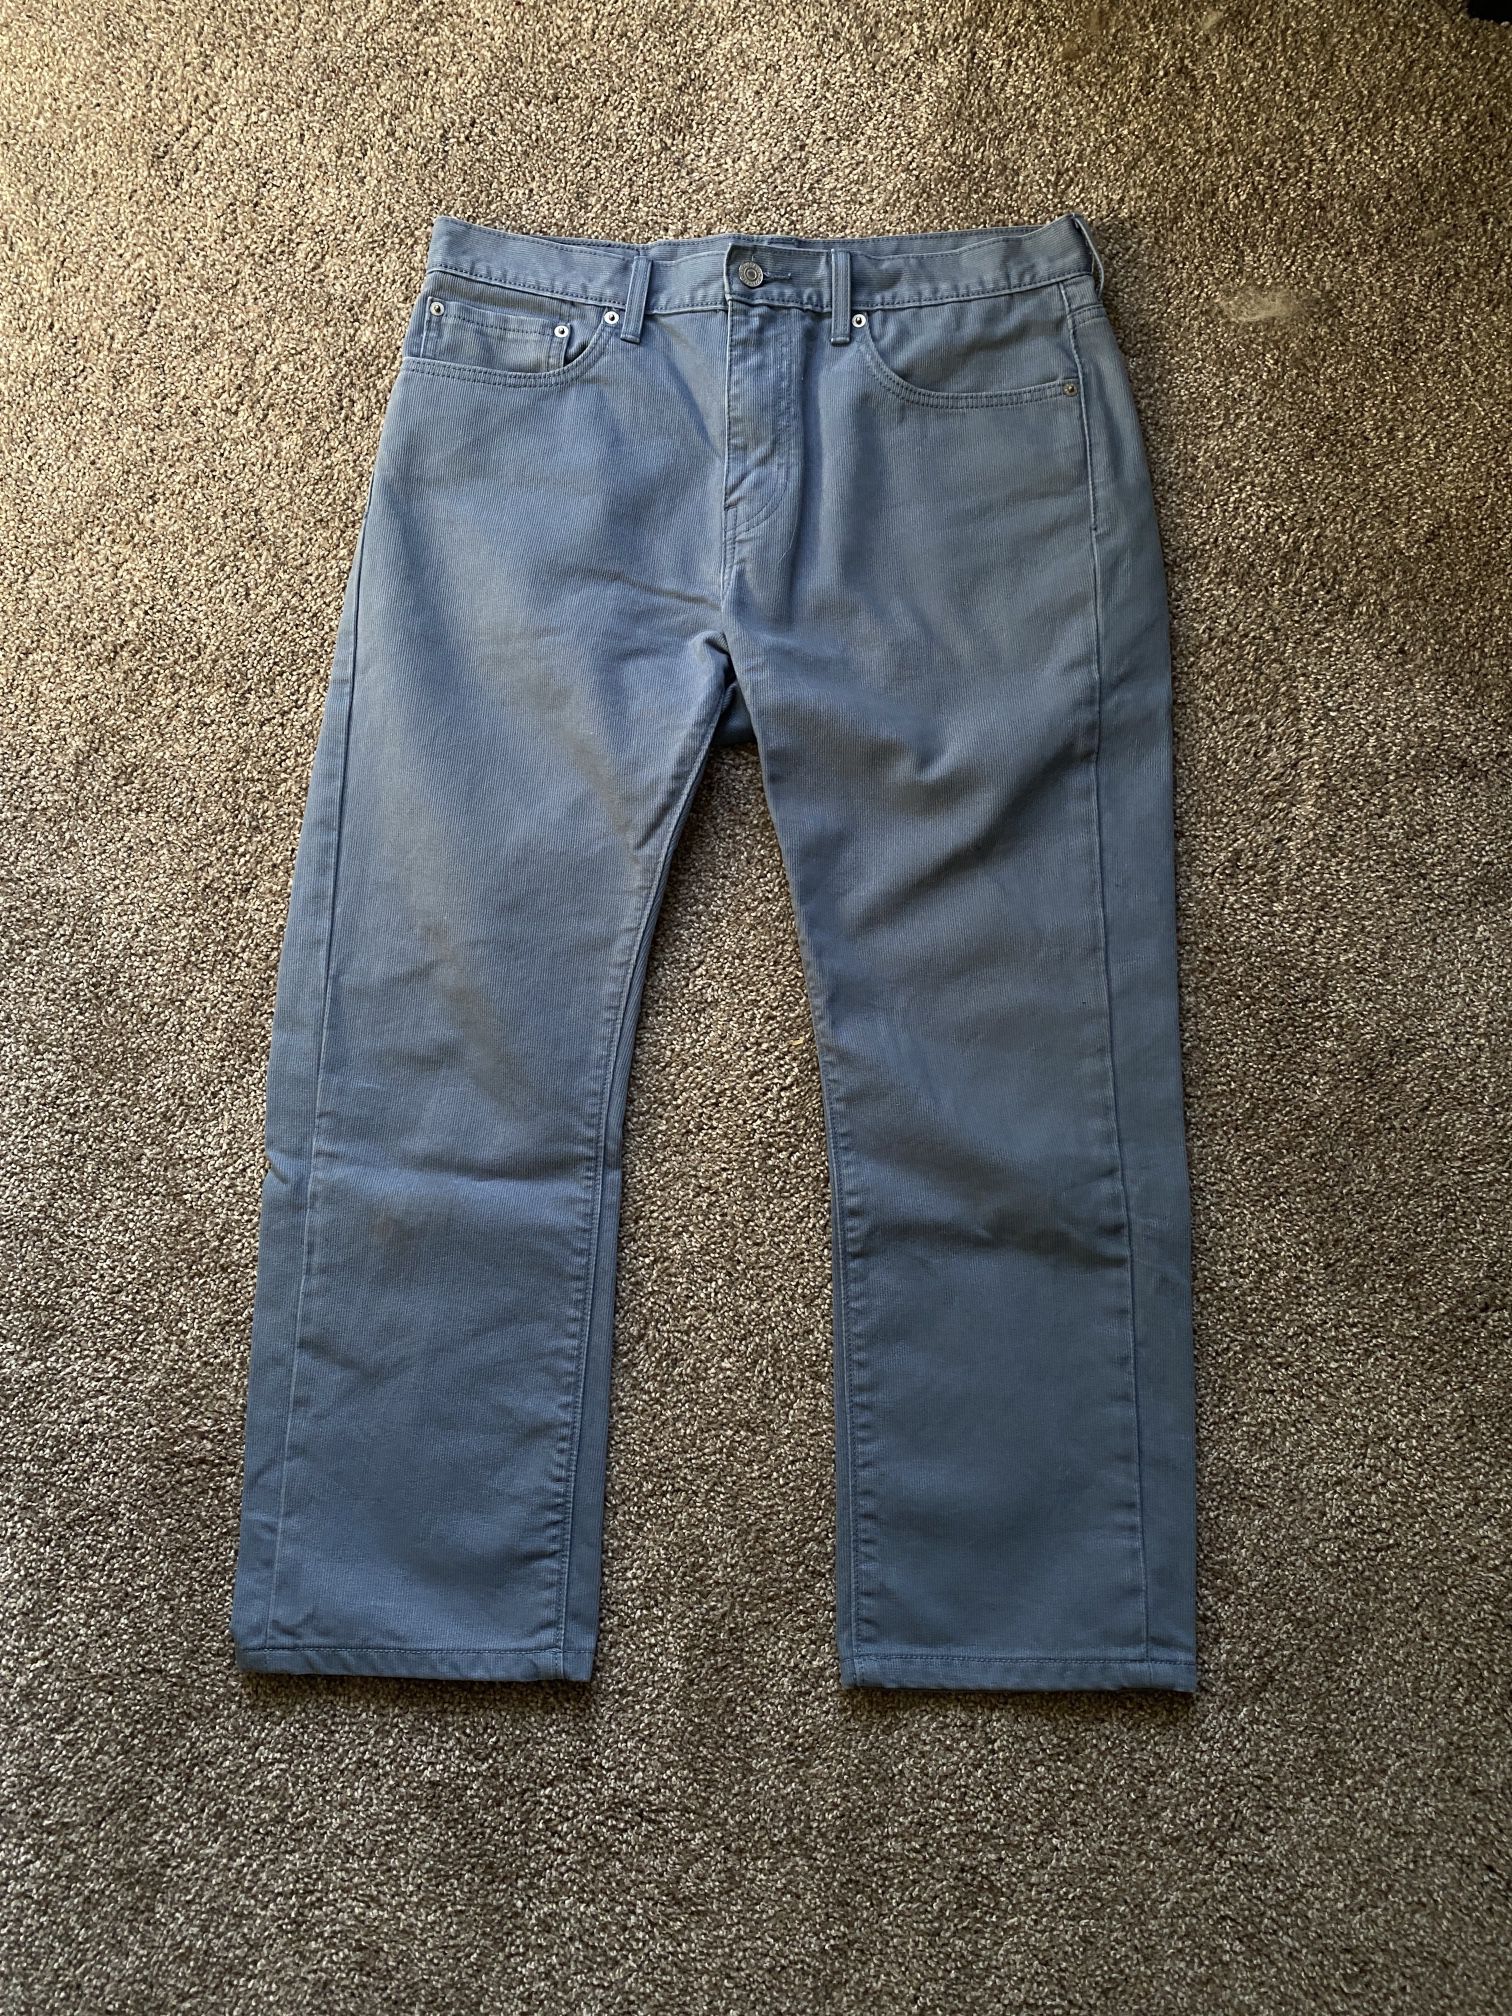 Levi 513 Jeans